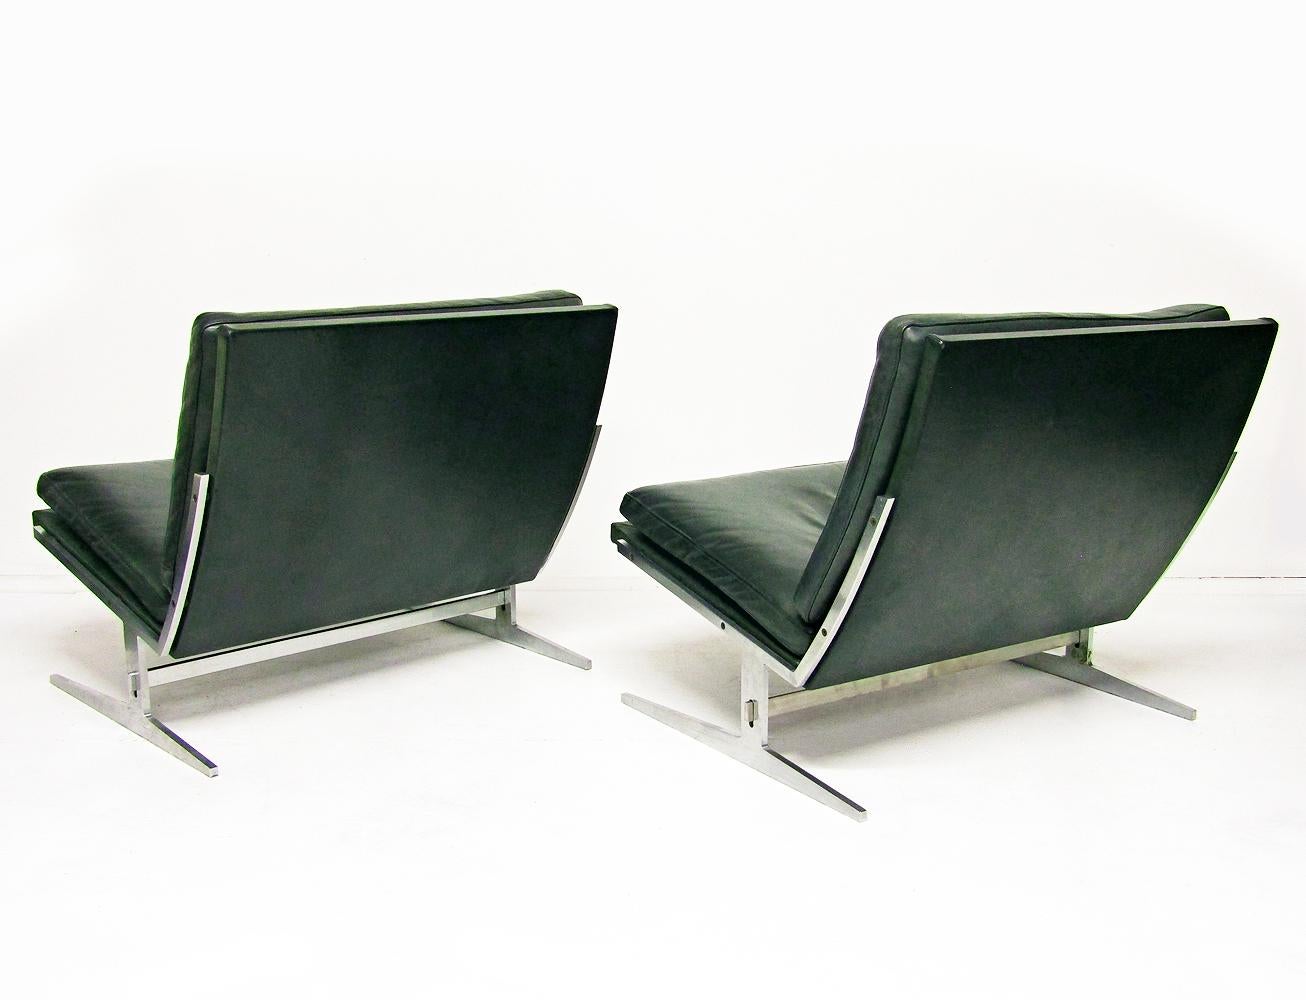 Zwei dänische BO-561 Stühle aus Stahl und Leder von Preben Fabricius & Jorgen Kastholm für BO-EX.

Diese architektonischen Designklassiker aus den 1960er Jahren sind robust und sehr bequem. Die Ledereinbände sind in einem seltenen, tiefen Türkis